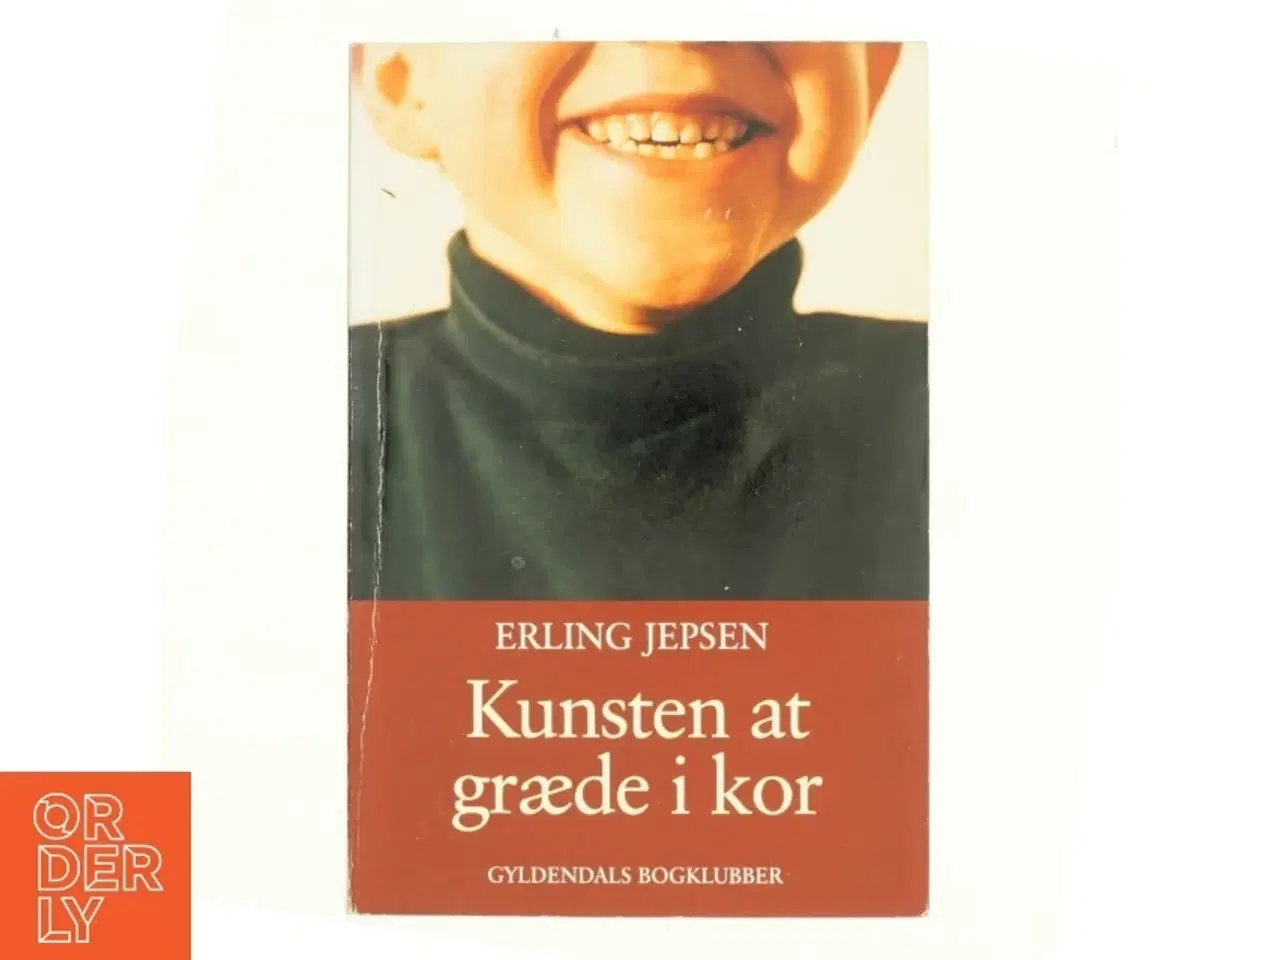 Billede 1 - Kunsten at græde i kor : roman af Erling Jepsen (f. 1956) (Bog)